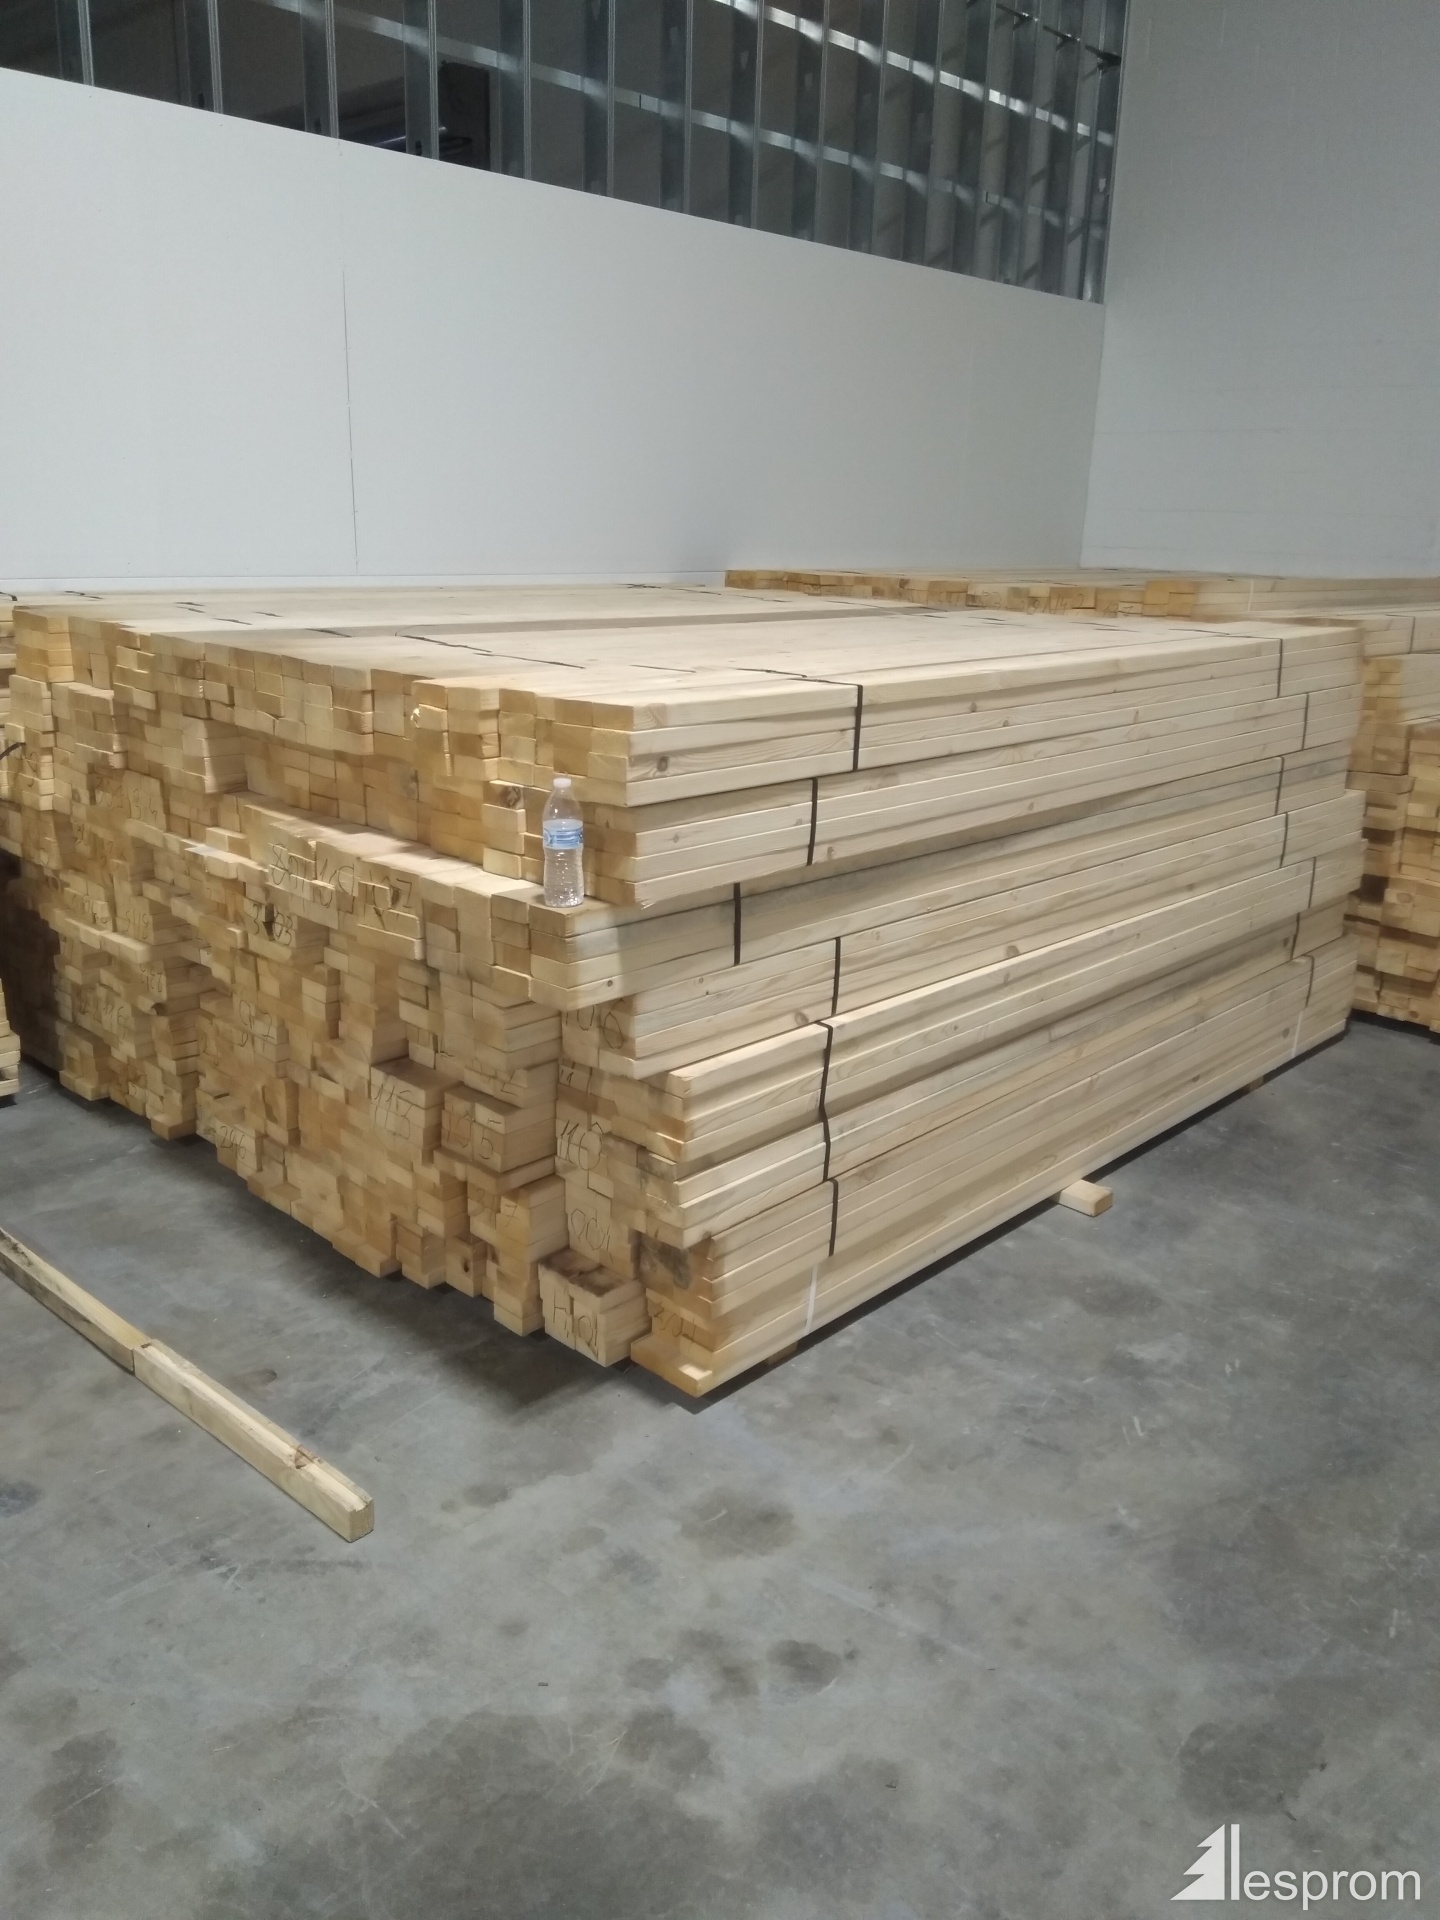 2 x 4-Inch X 10-Foot #1 S4s Treated Yellow Pine Lumber